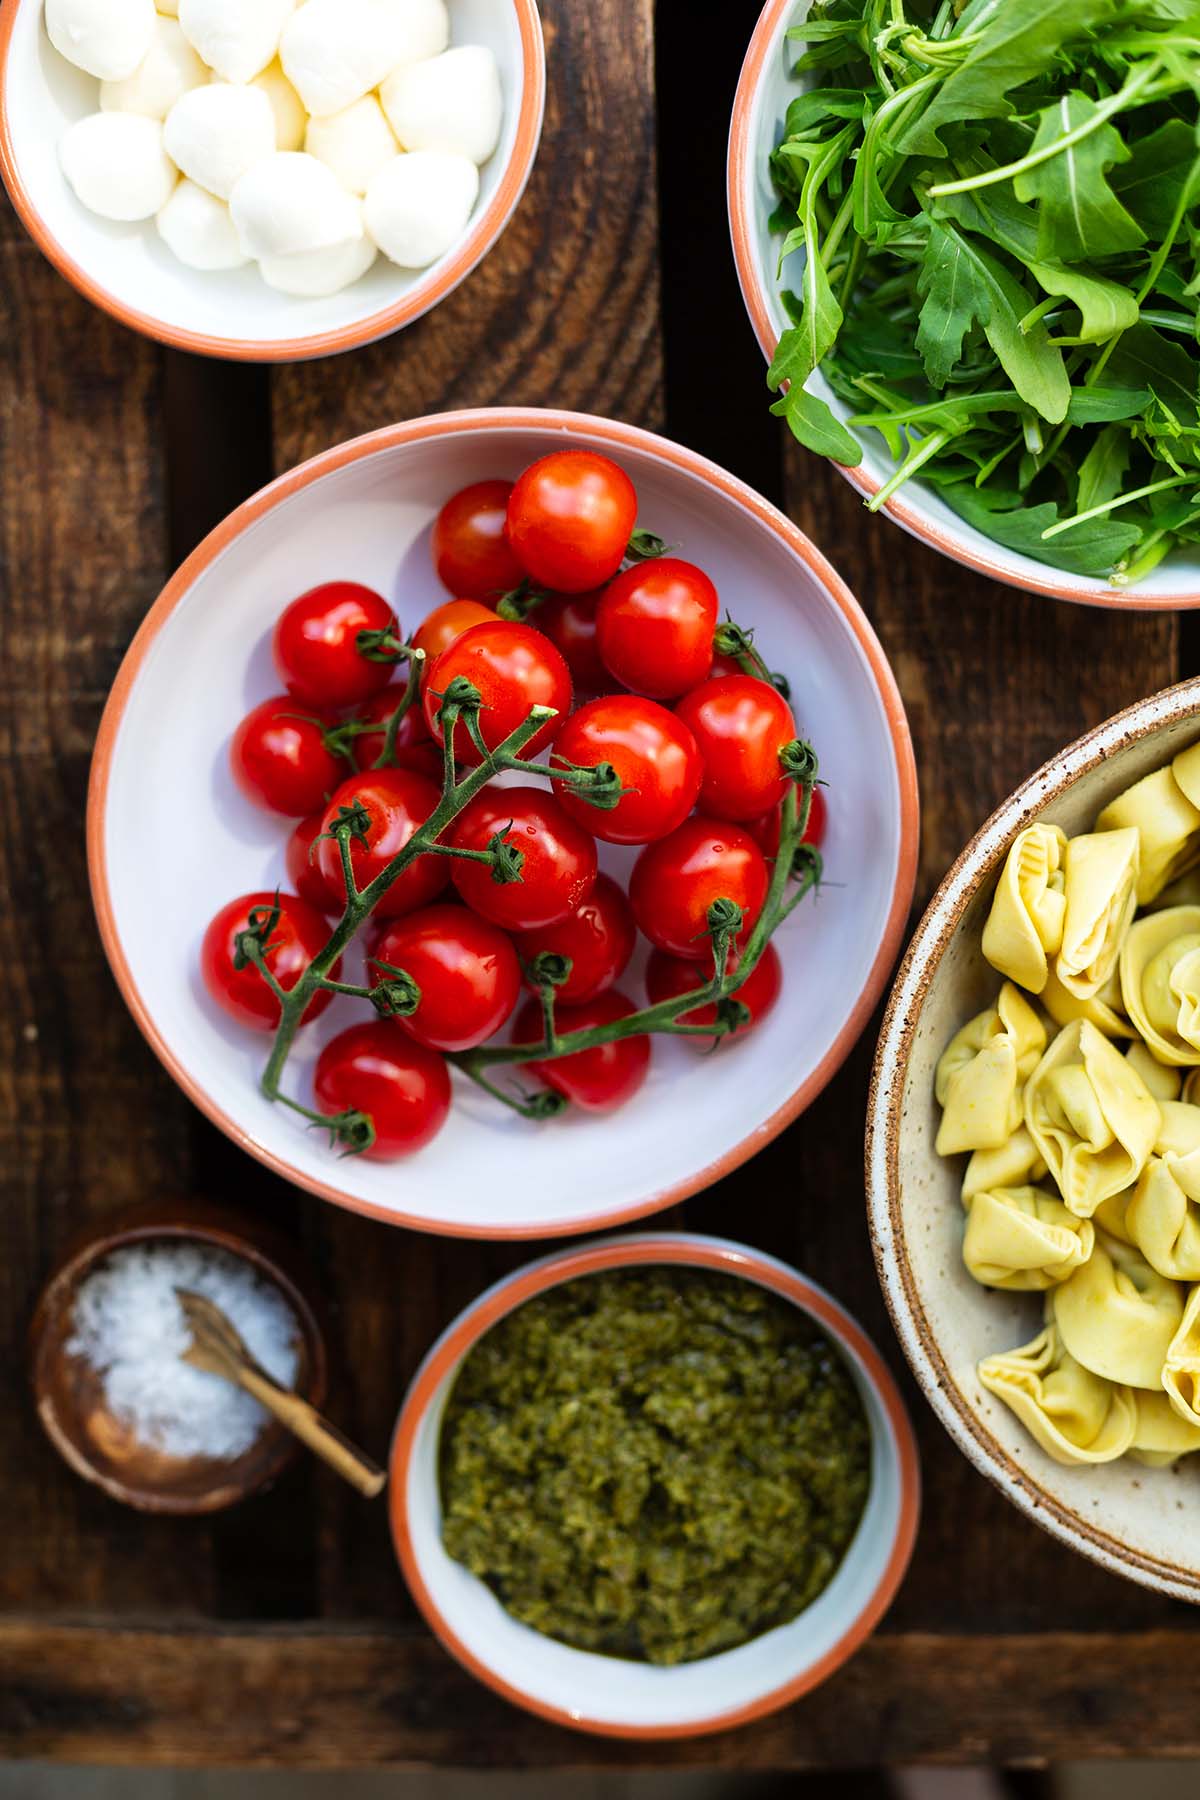 Alle Zutaten für den Tortellini-Salat mit Pesto einzeln verteilt in Schüsseln auf dunkelm Holzuntergrund.
Zu sehen sind: Cherrytomaten, Rukola, Mozzarella-Kügelchen, grünes Pesto, Tortellini und Salz.